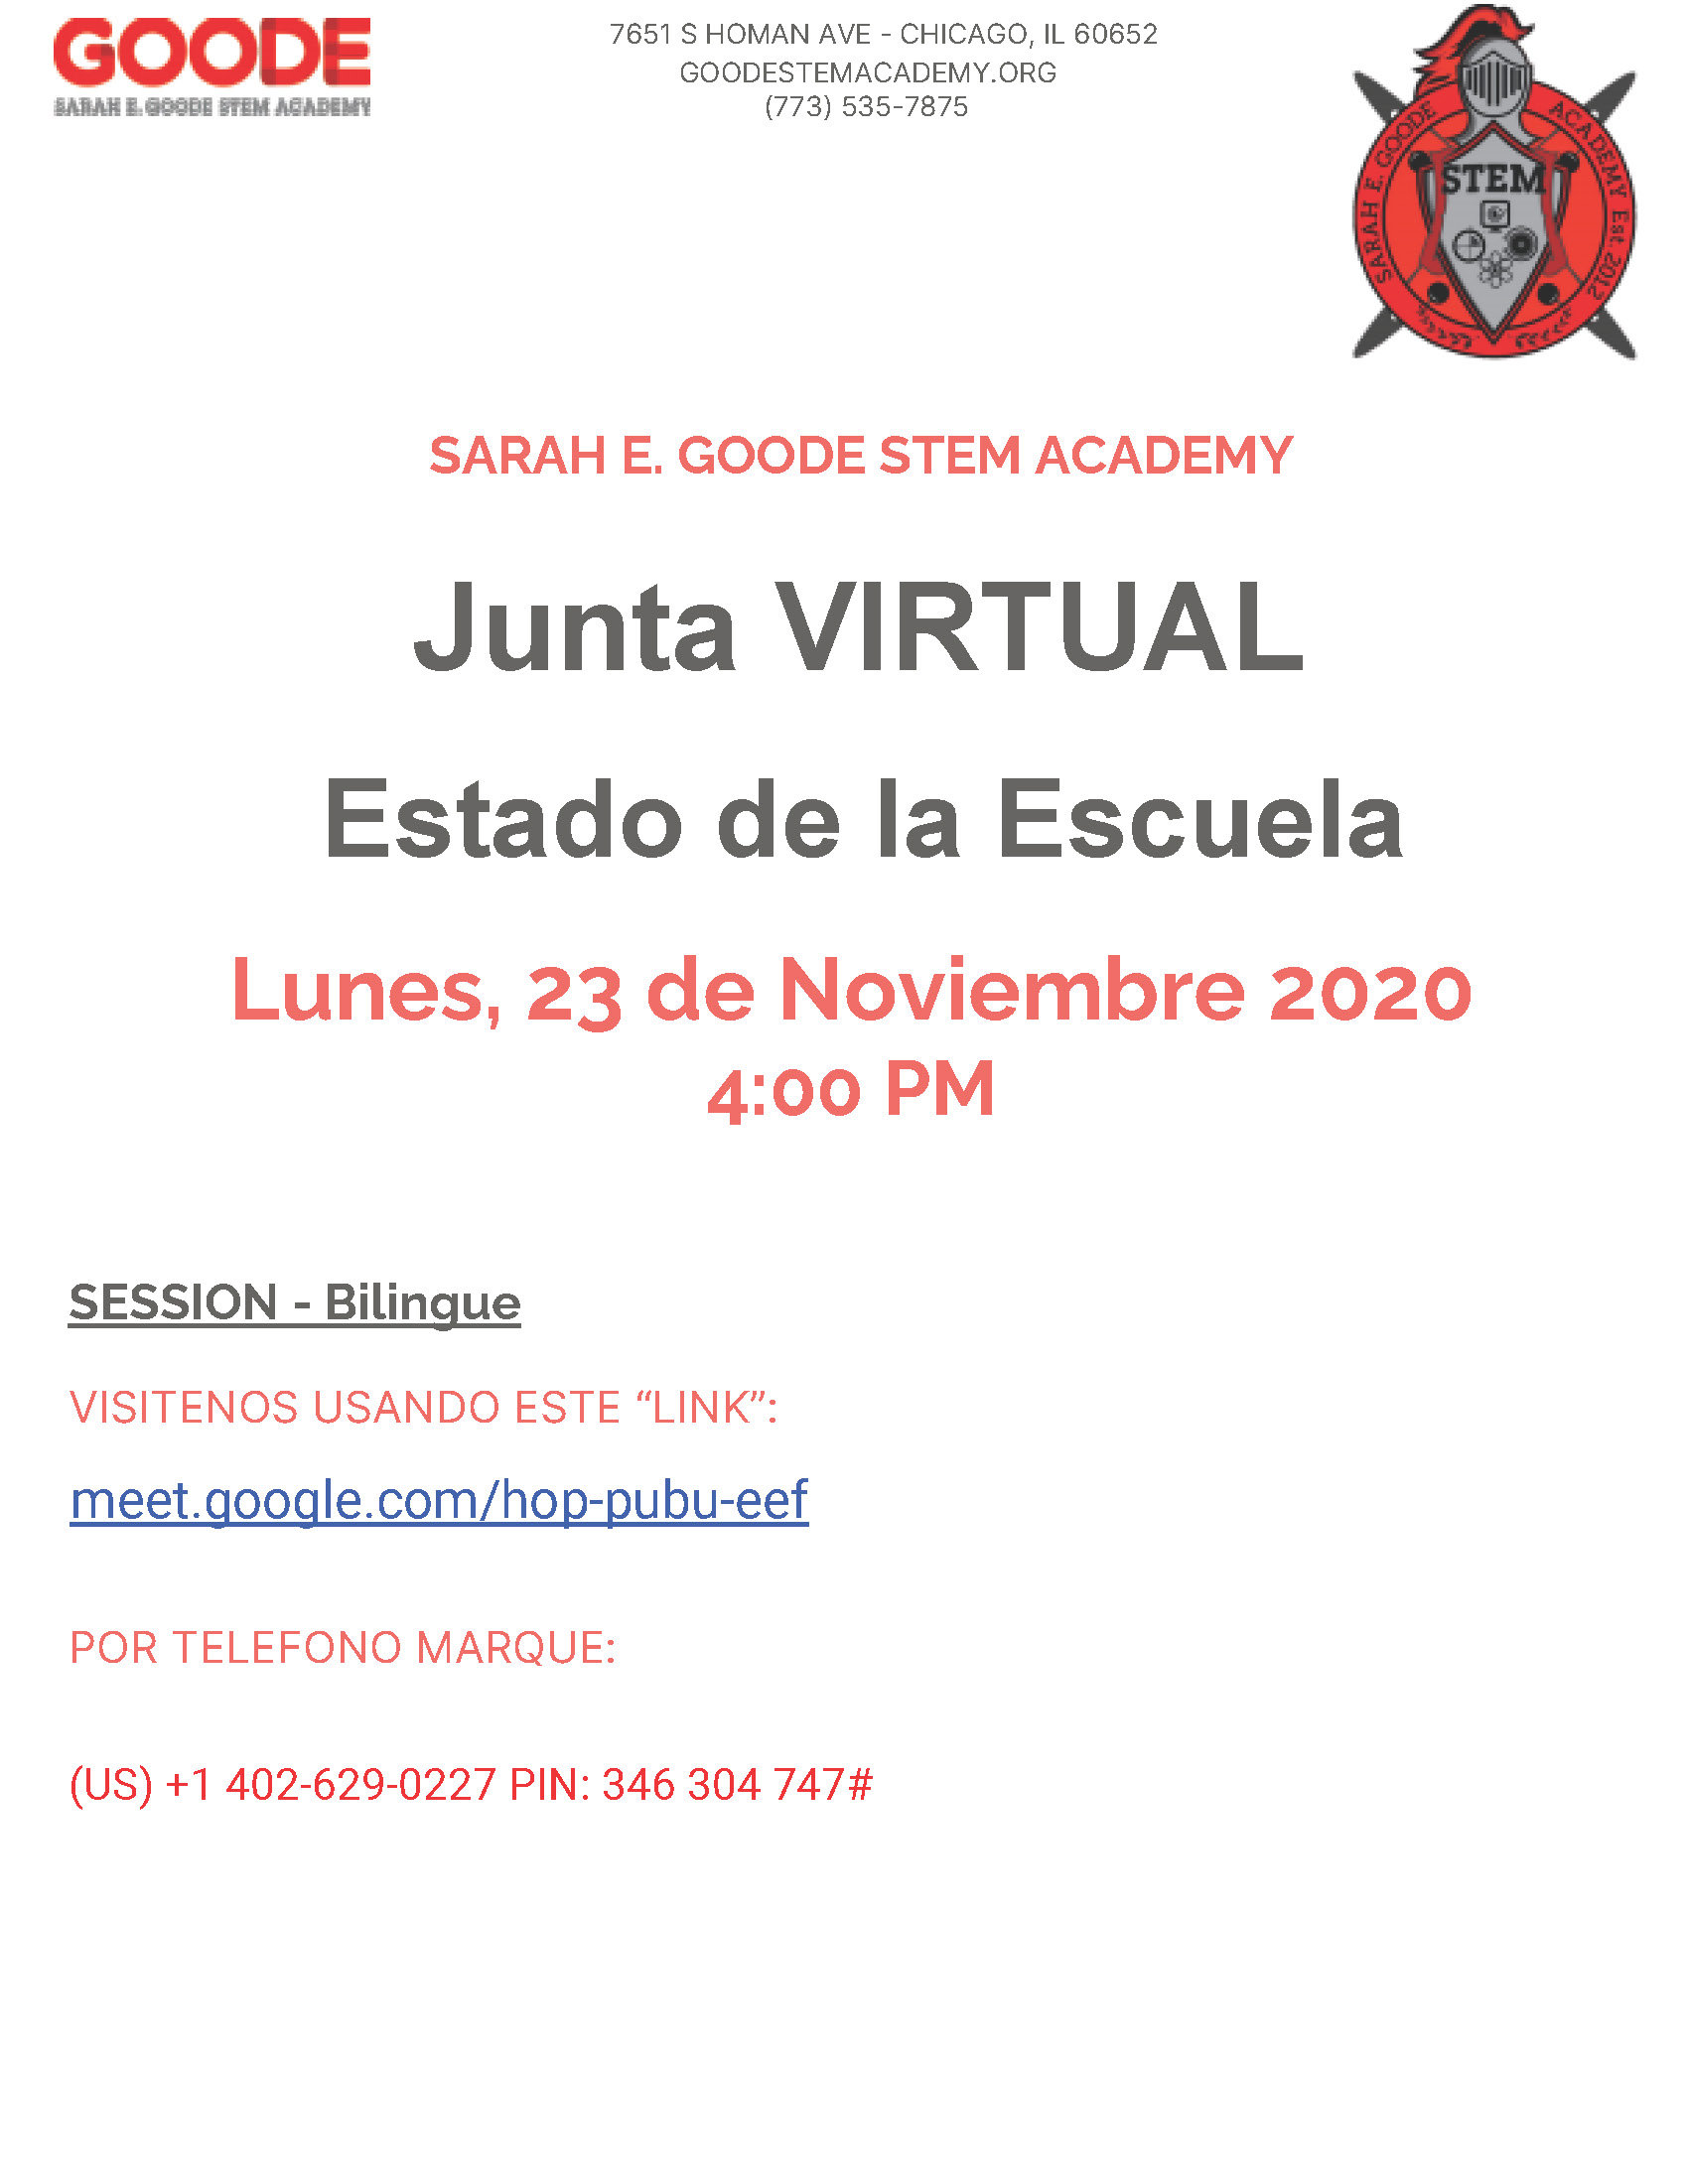 Junta Virtual Estado de la Escuela